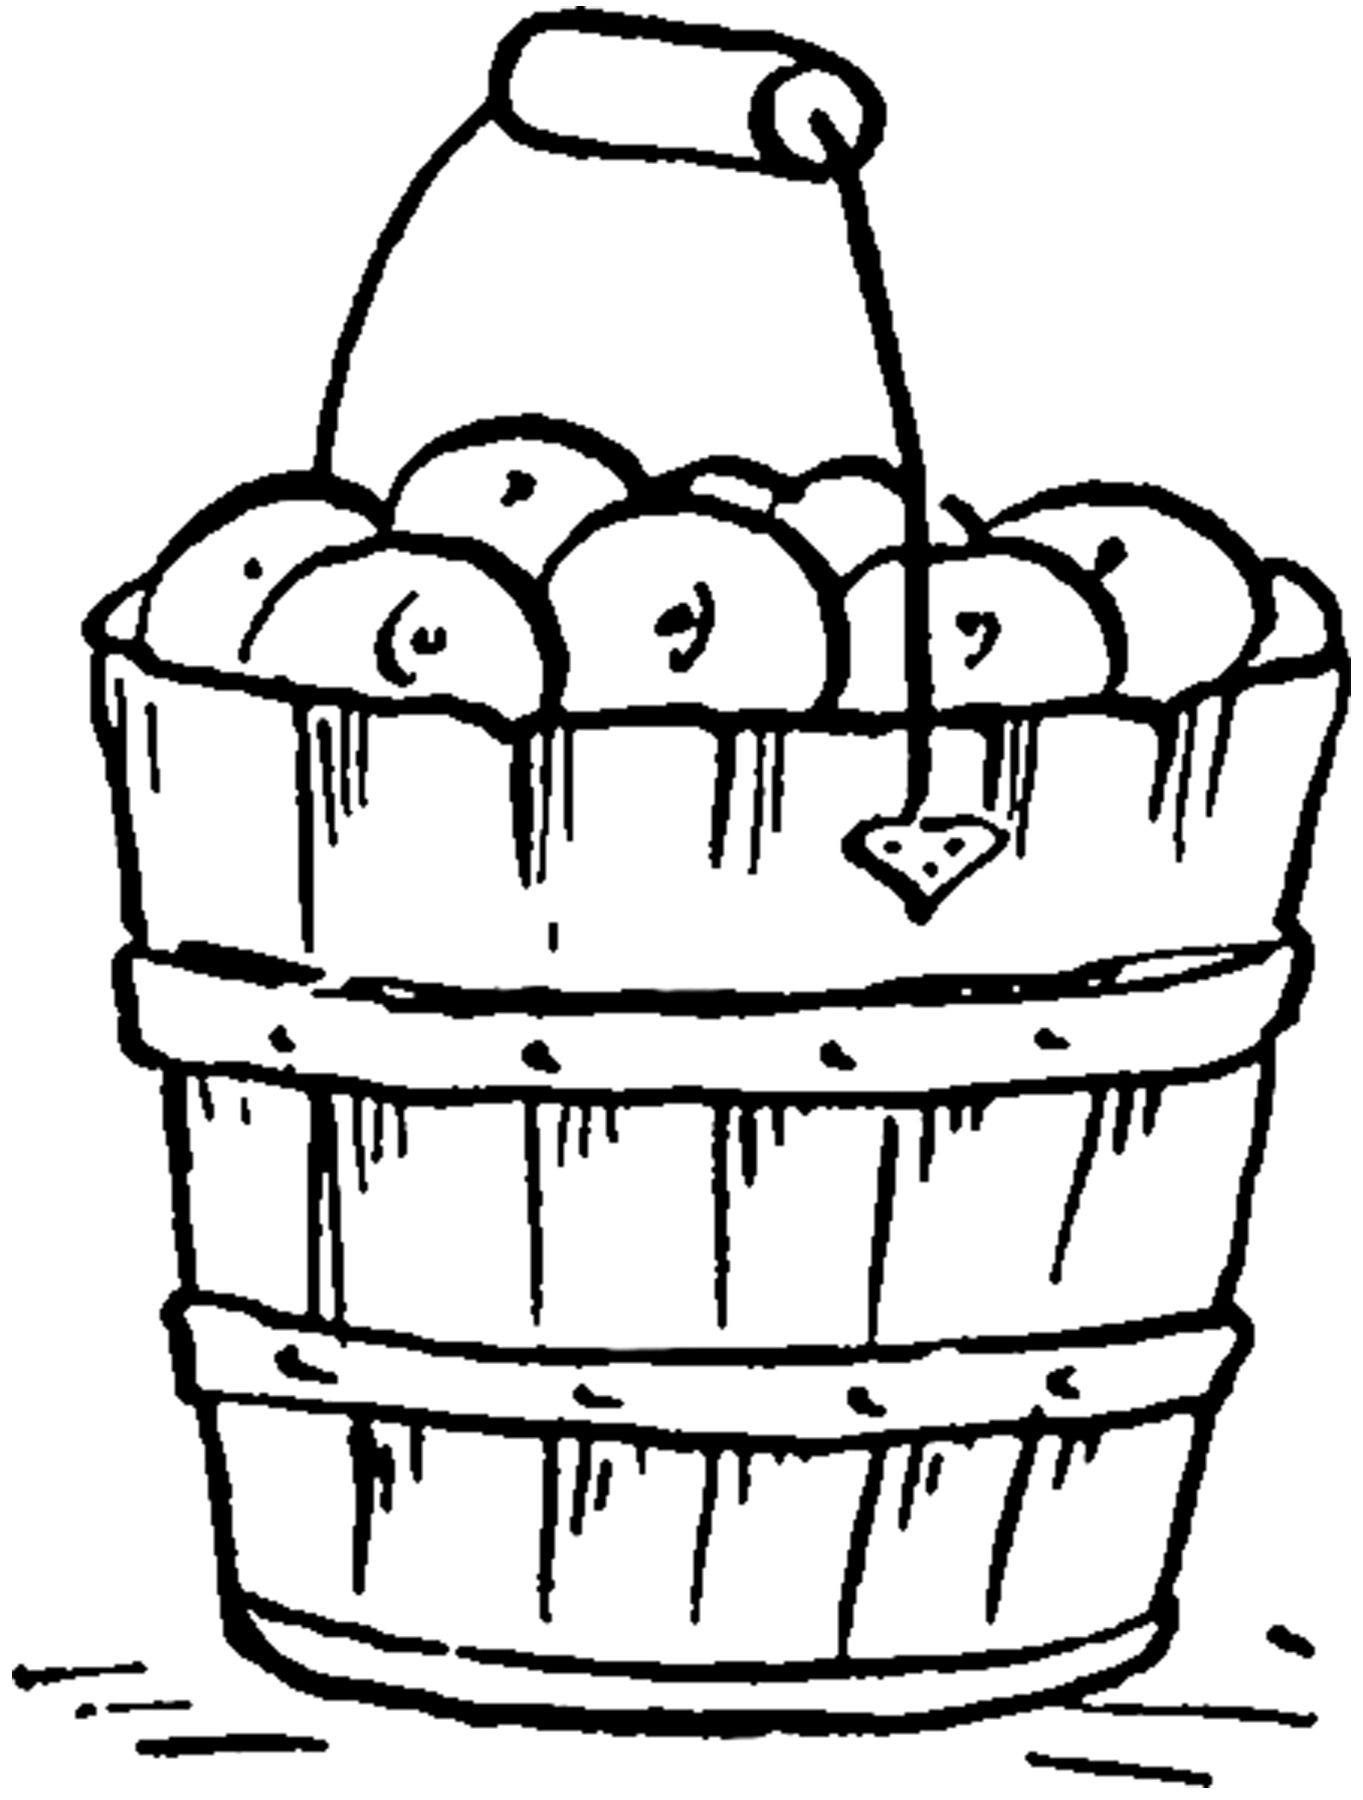 clipart apples bucket